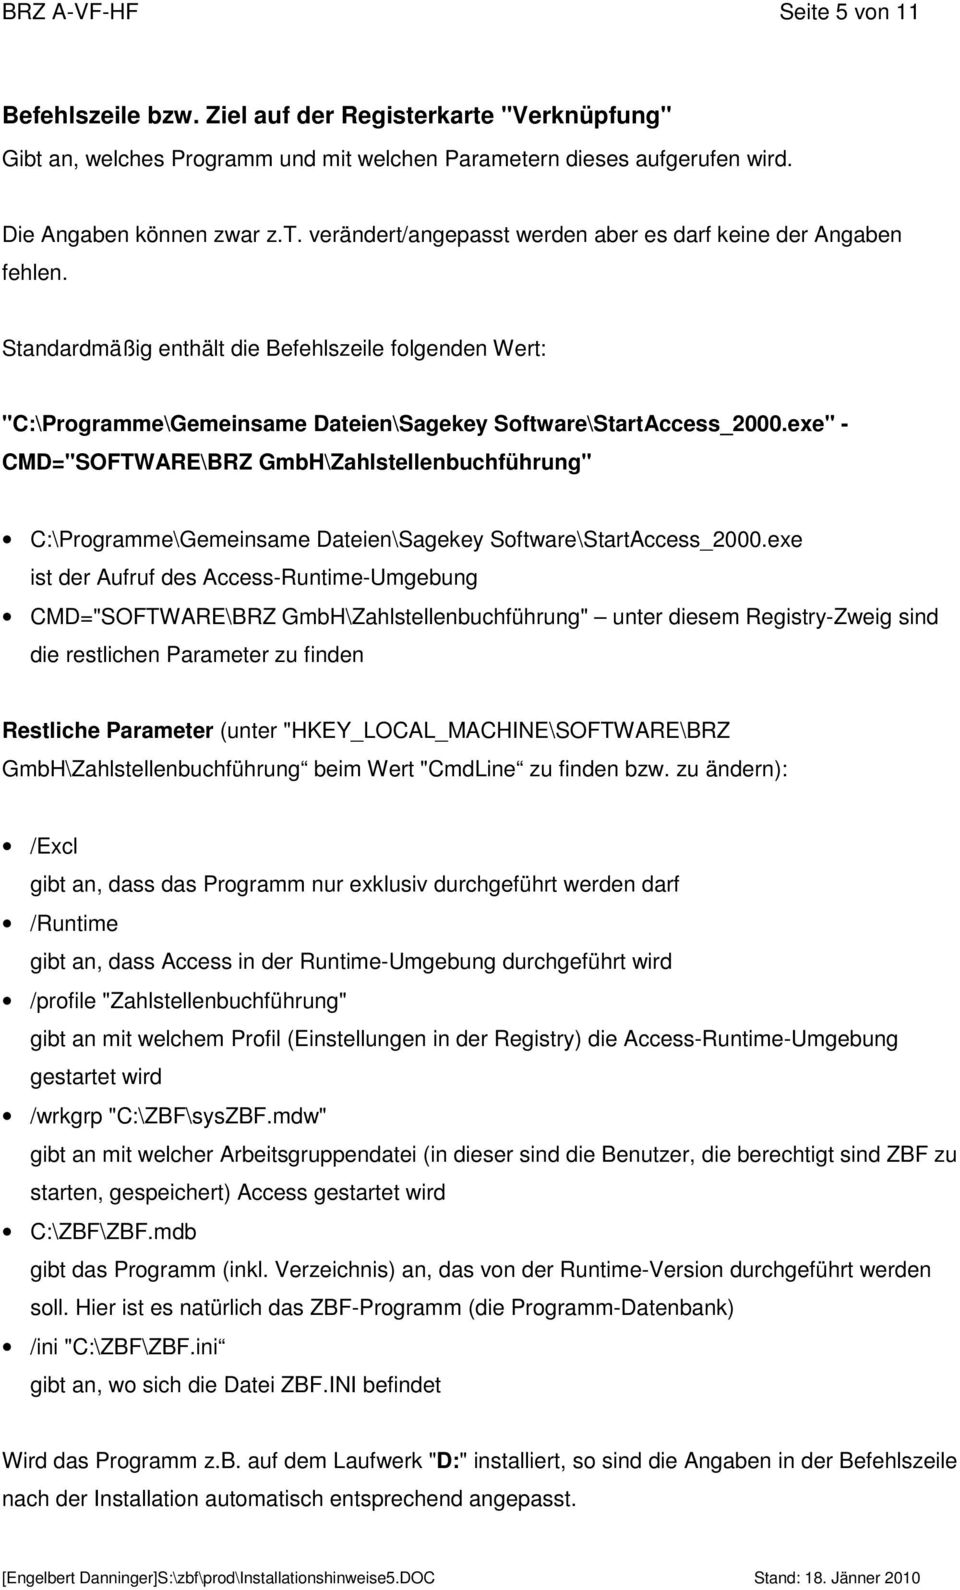 exe" - CMD="SOFTWARE\BRZ GmbH\Zahlstellenbuchführung" C:\Programme\Gemeinsame Dateien\Sagekey Software\StartAccess_2000.